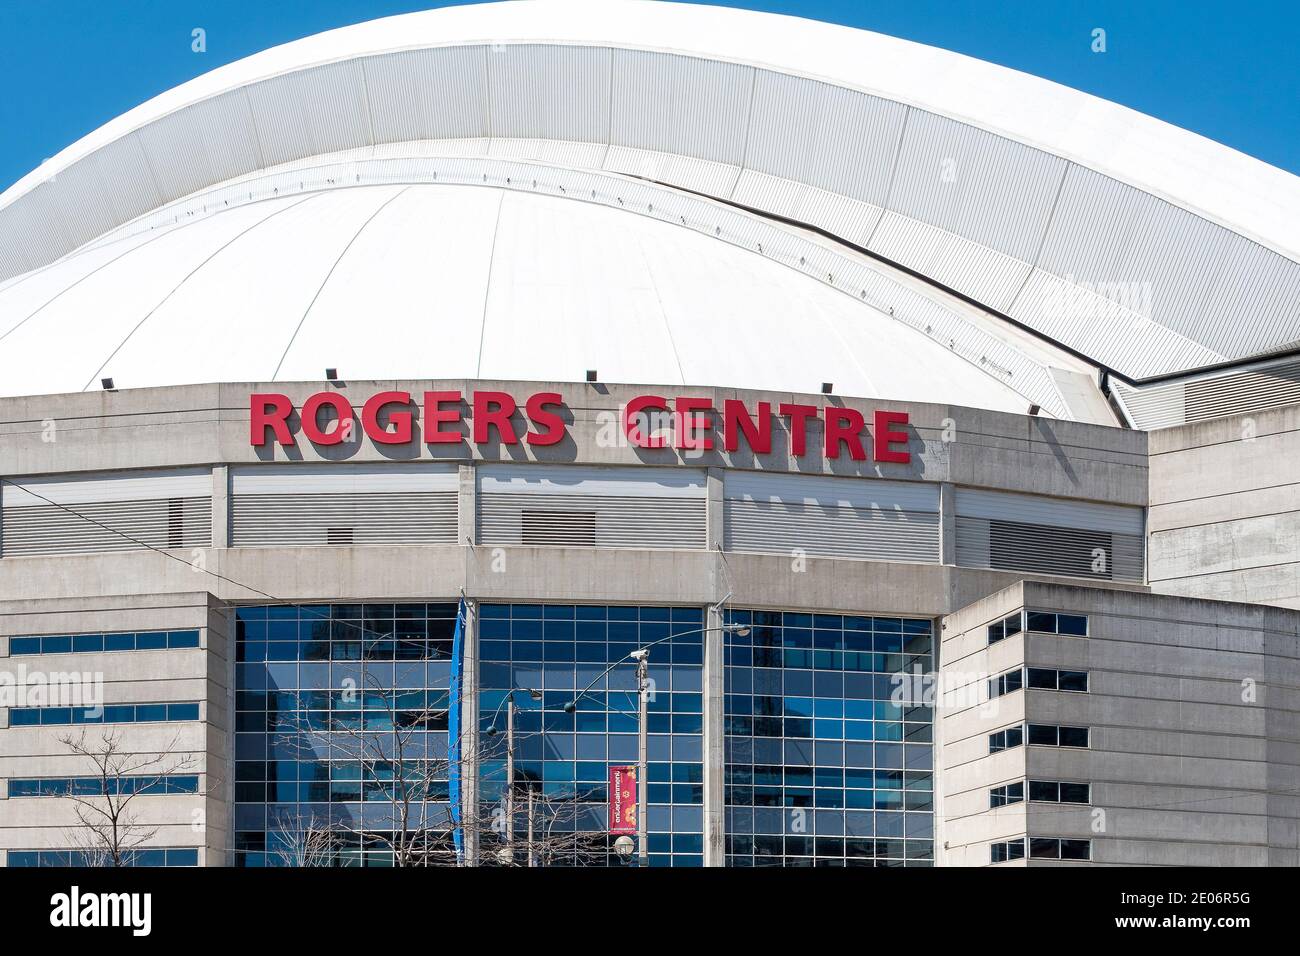 Roger di ingresso al centro, il punto di riferimento è un multi-purpose Stadium nel centro cittadino di Toronto, è la casa del Toronto Blue Jays tra le altre squadre sportive. Foto Stock